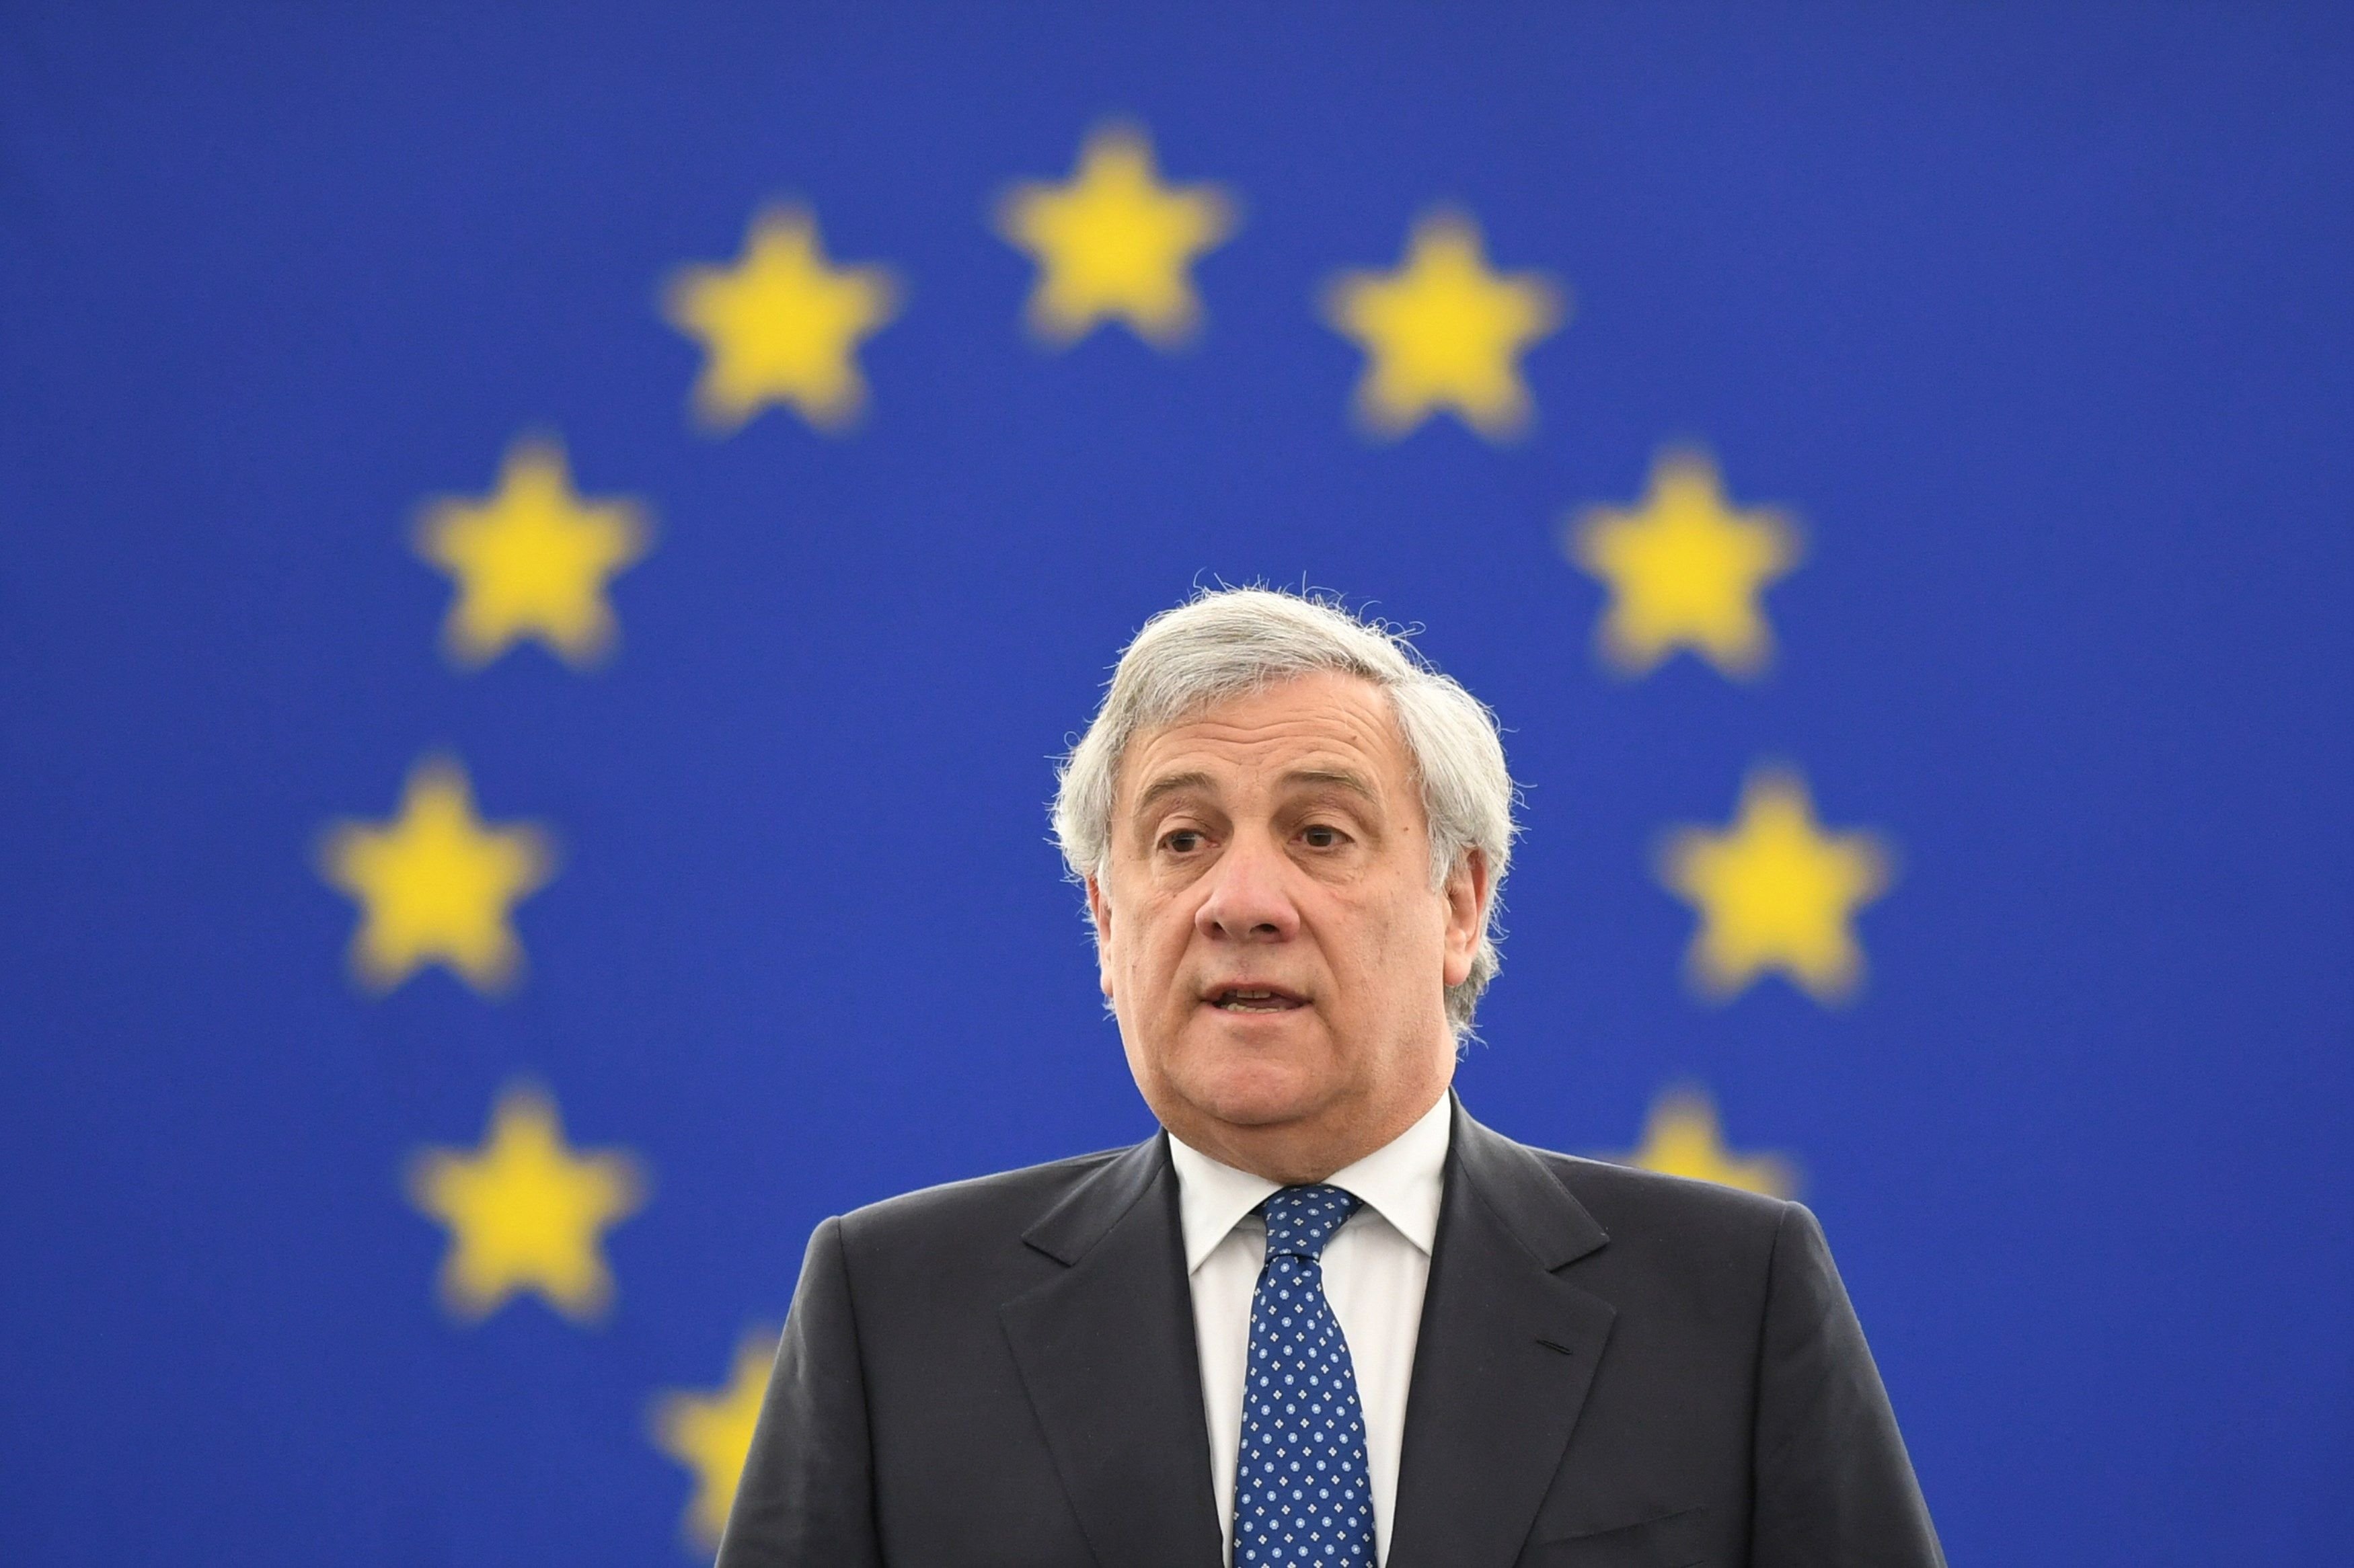 La Crida exige a Tajani, Tusk y Juncker que corrijan a la JEC "inmediatamente"